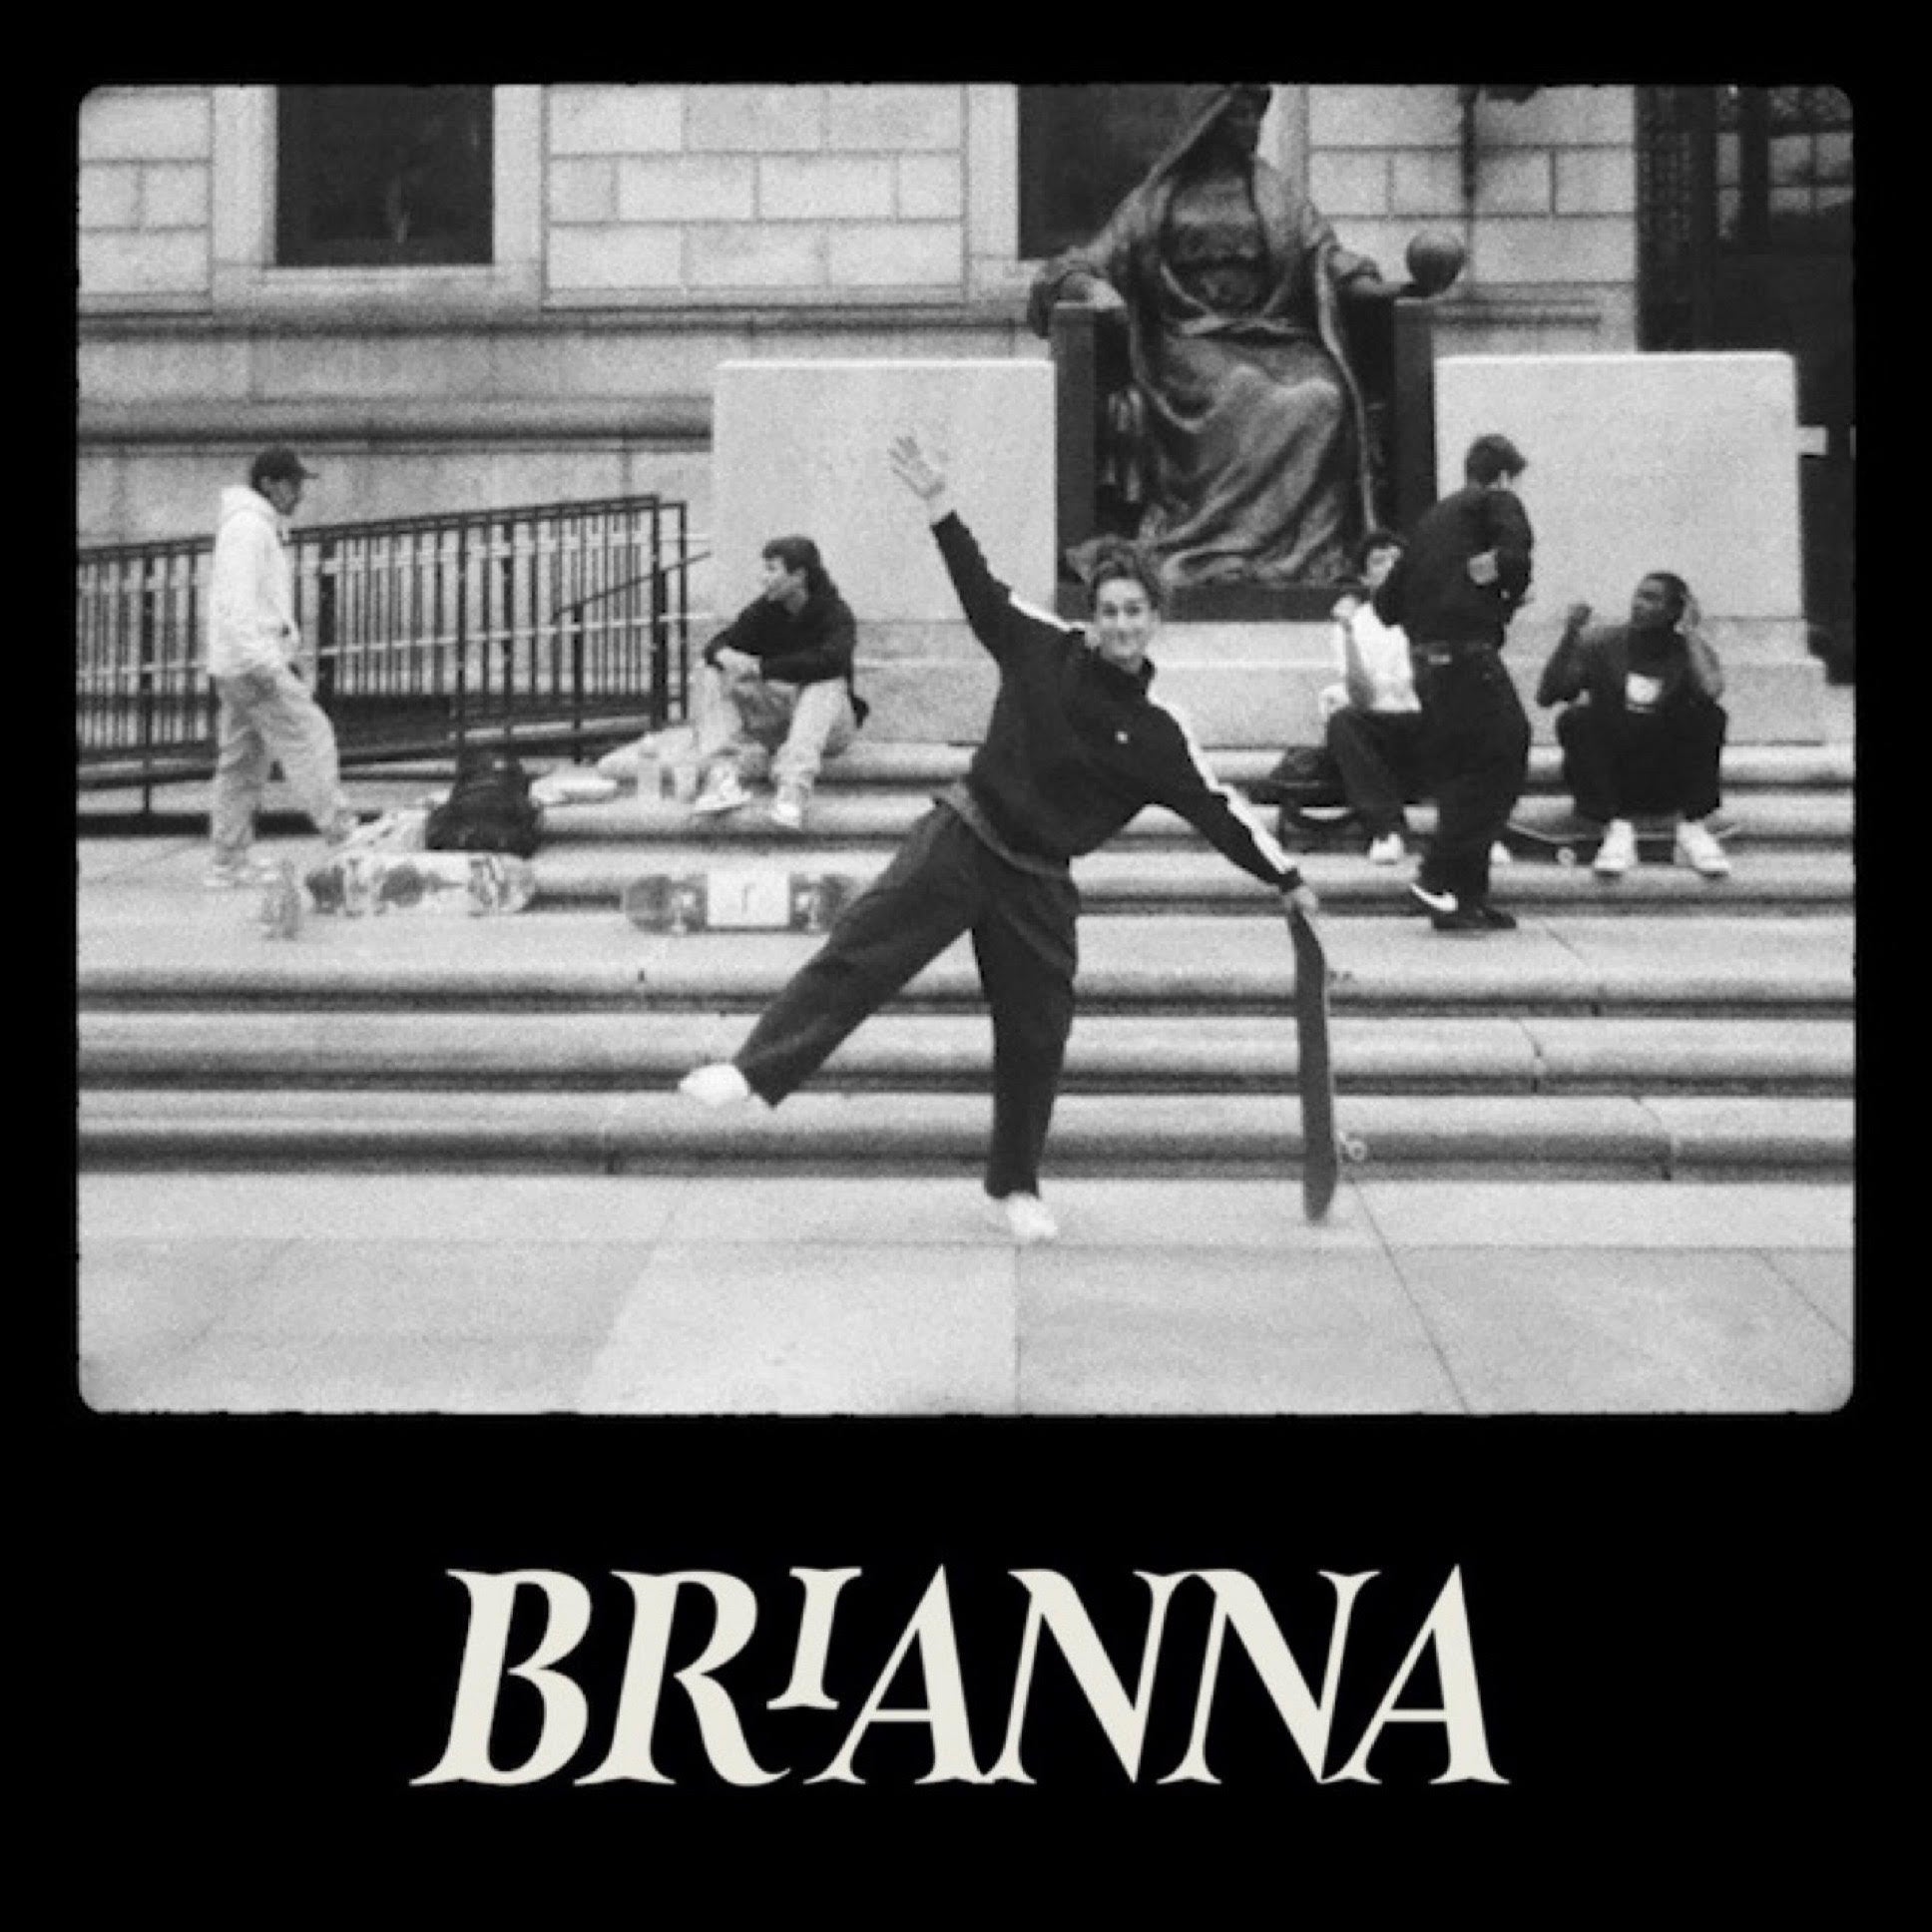 Brianna Delaney - "Skating Through Transition"